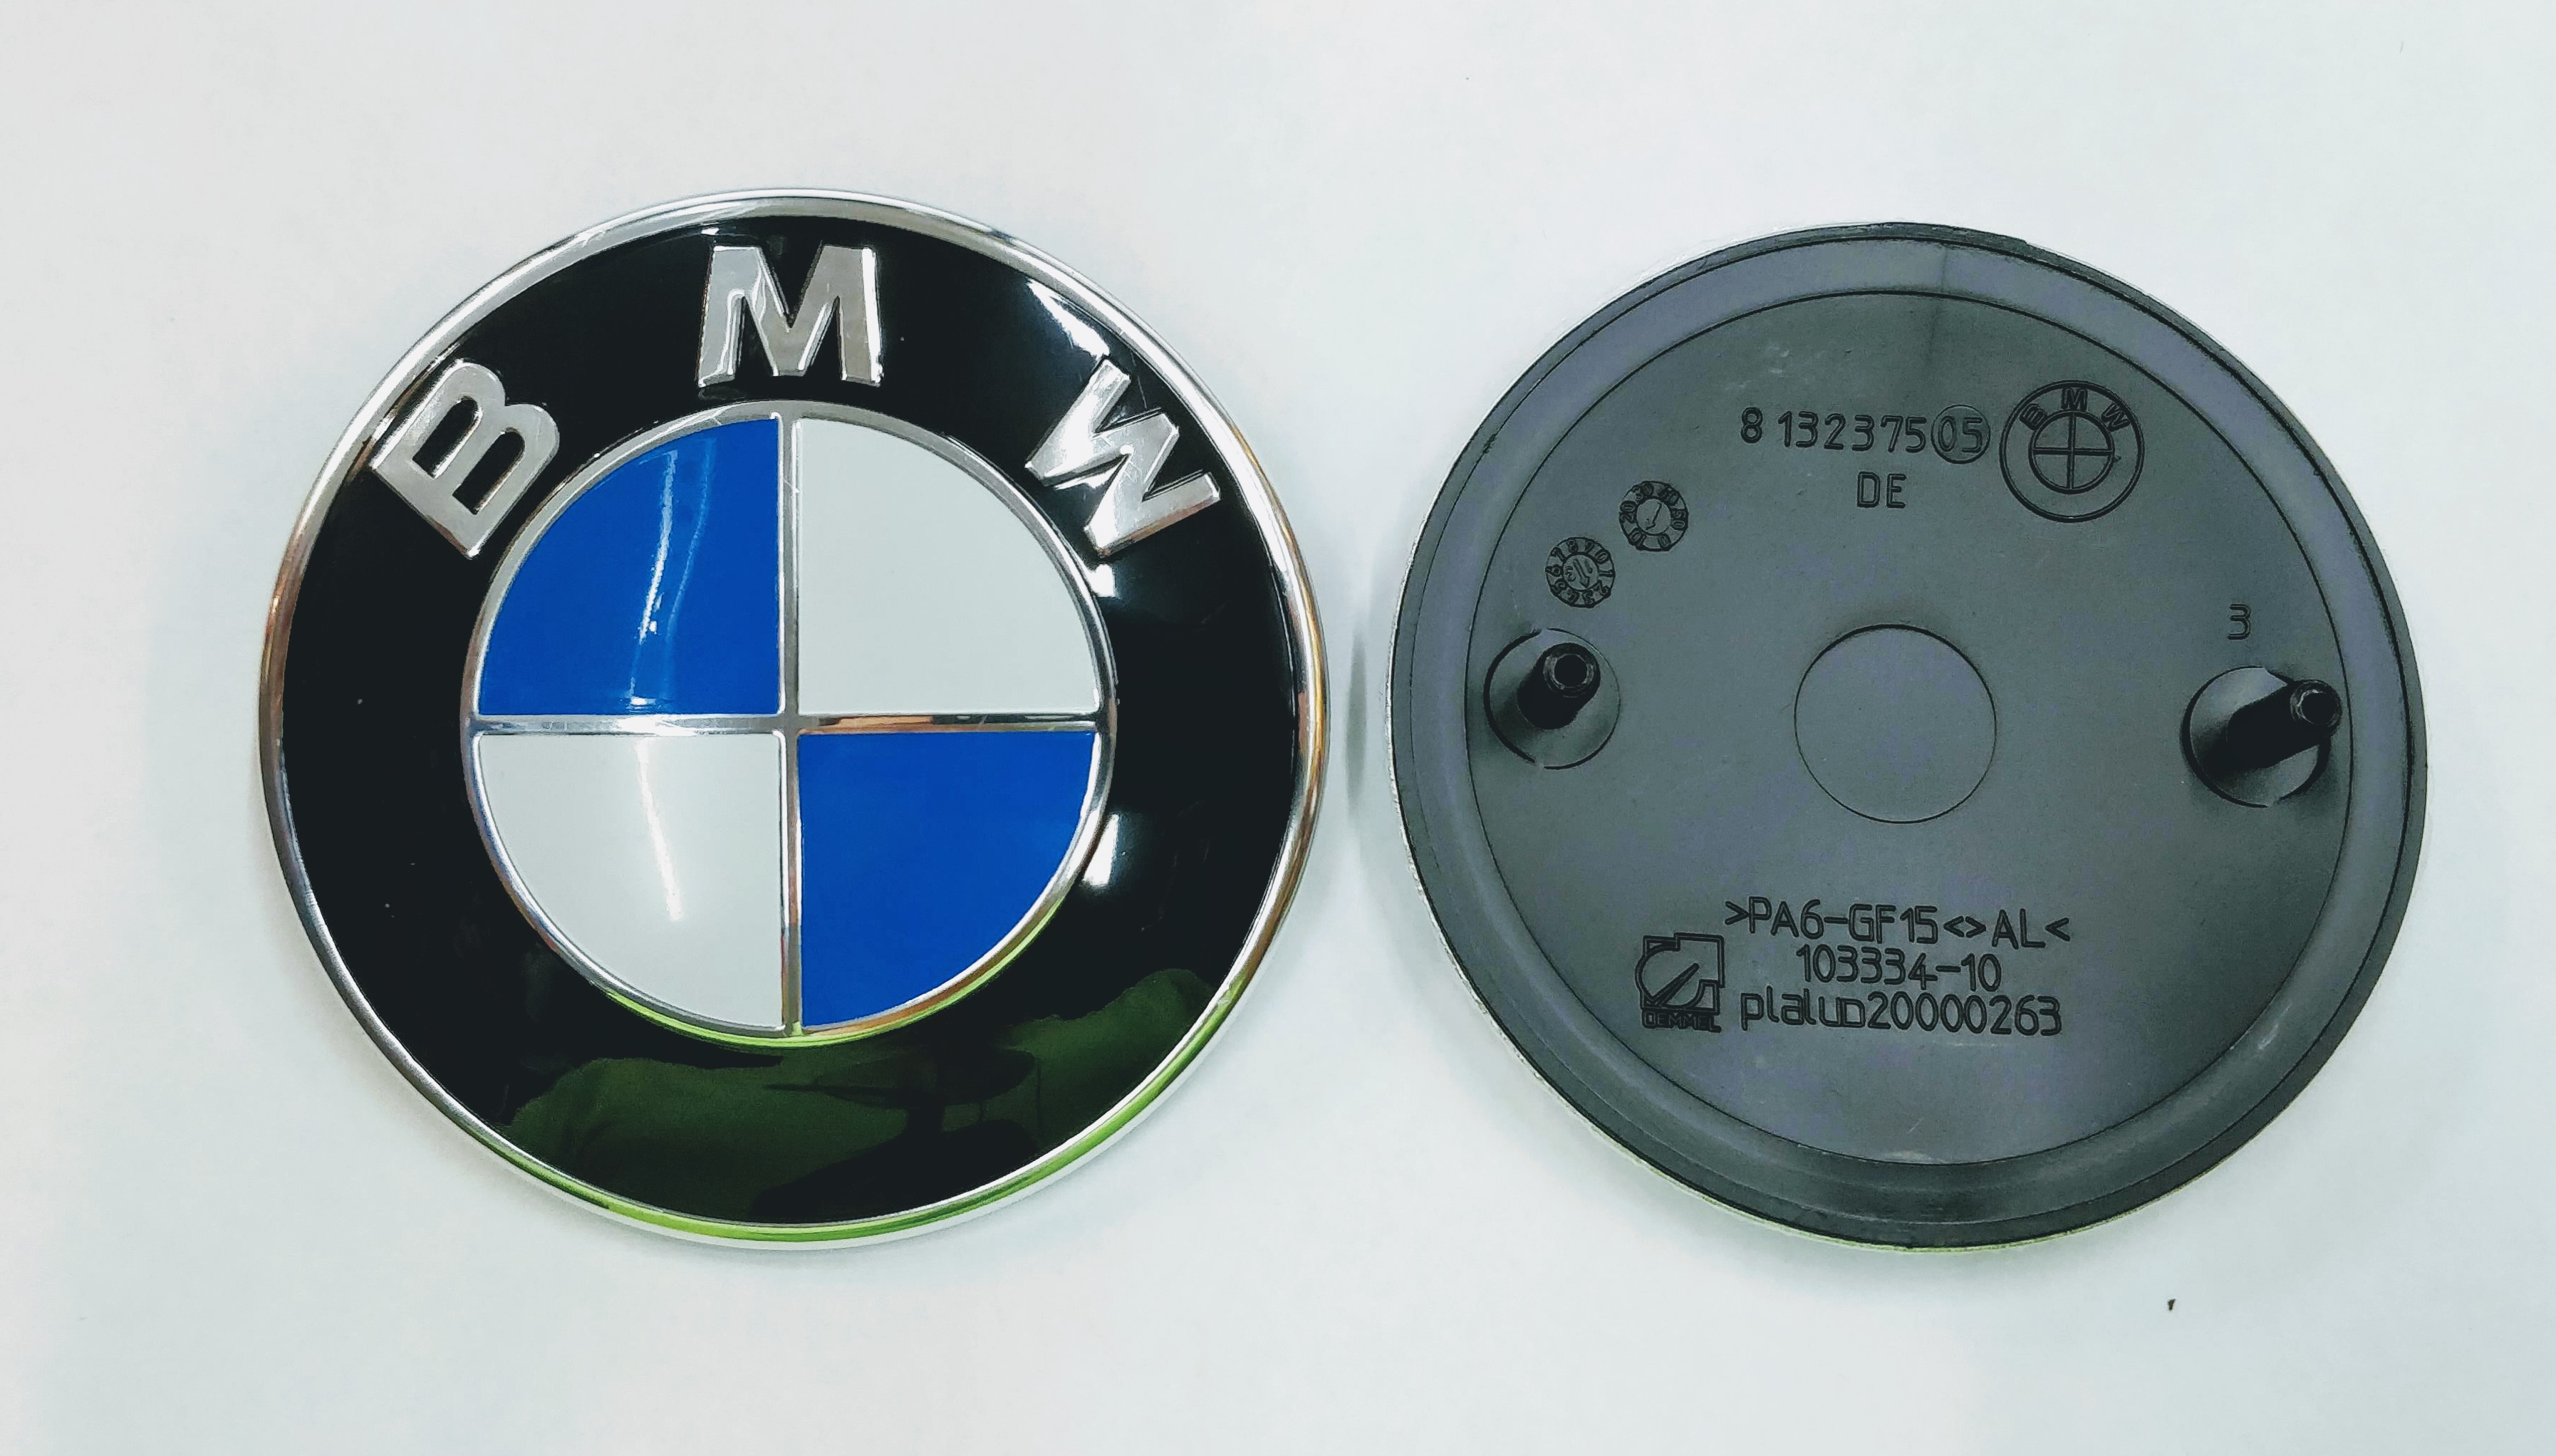 Эмблема BMW новый дизайн (кольцо хромированное шире) на капот все модели и на багажник Е-36,34,60,61,32,38 F01